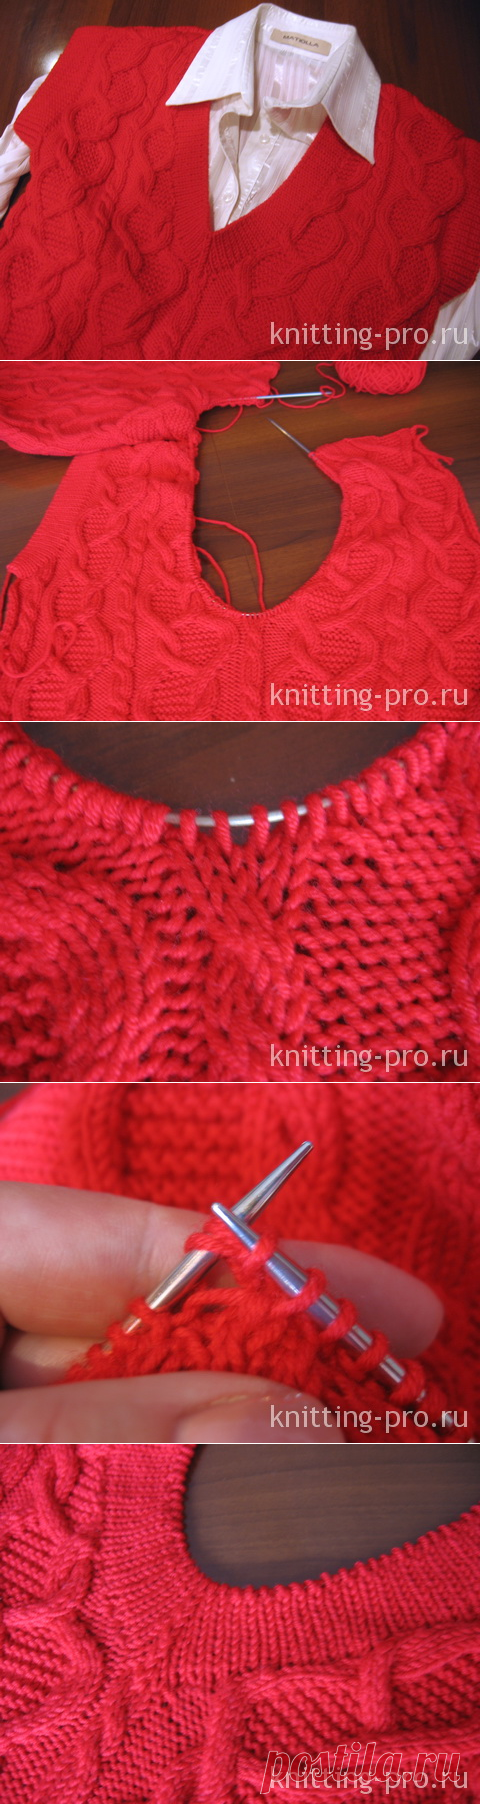 Обработка V-образного выреза горловины 1-м способом - knitting-pro.ru - От азов к мастерству